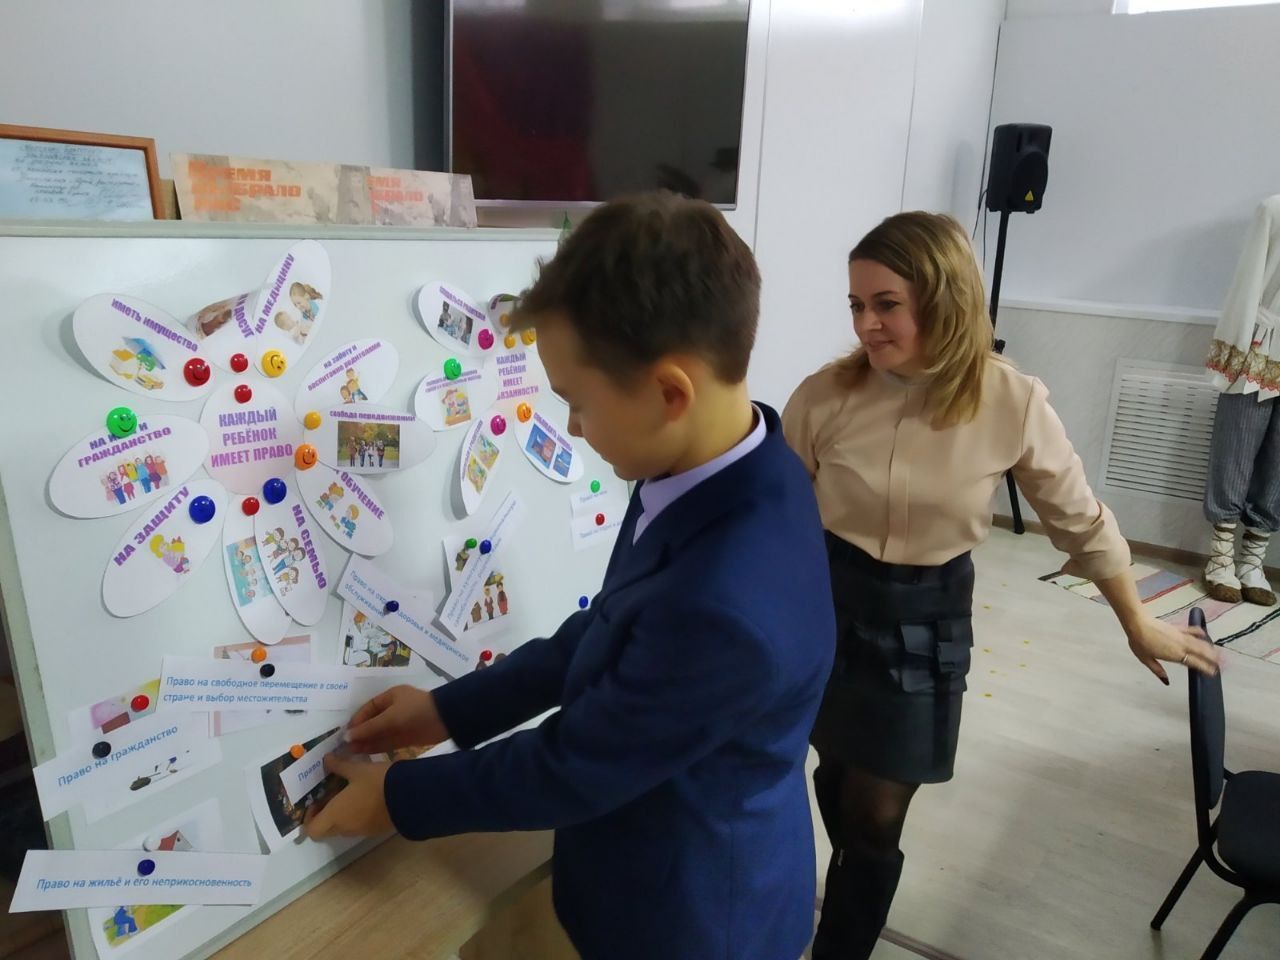 Проконсультировали более 1200 человек. В Ульяновской области подвели итоги Всероссийского дня правовой помощи детям